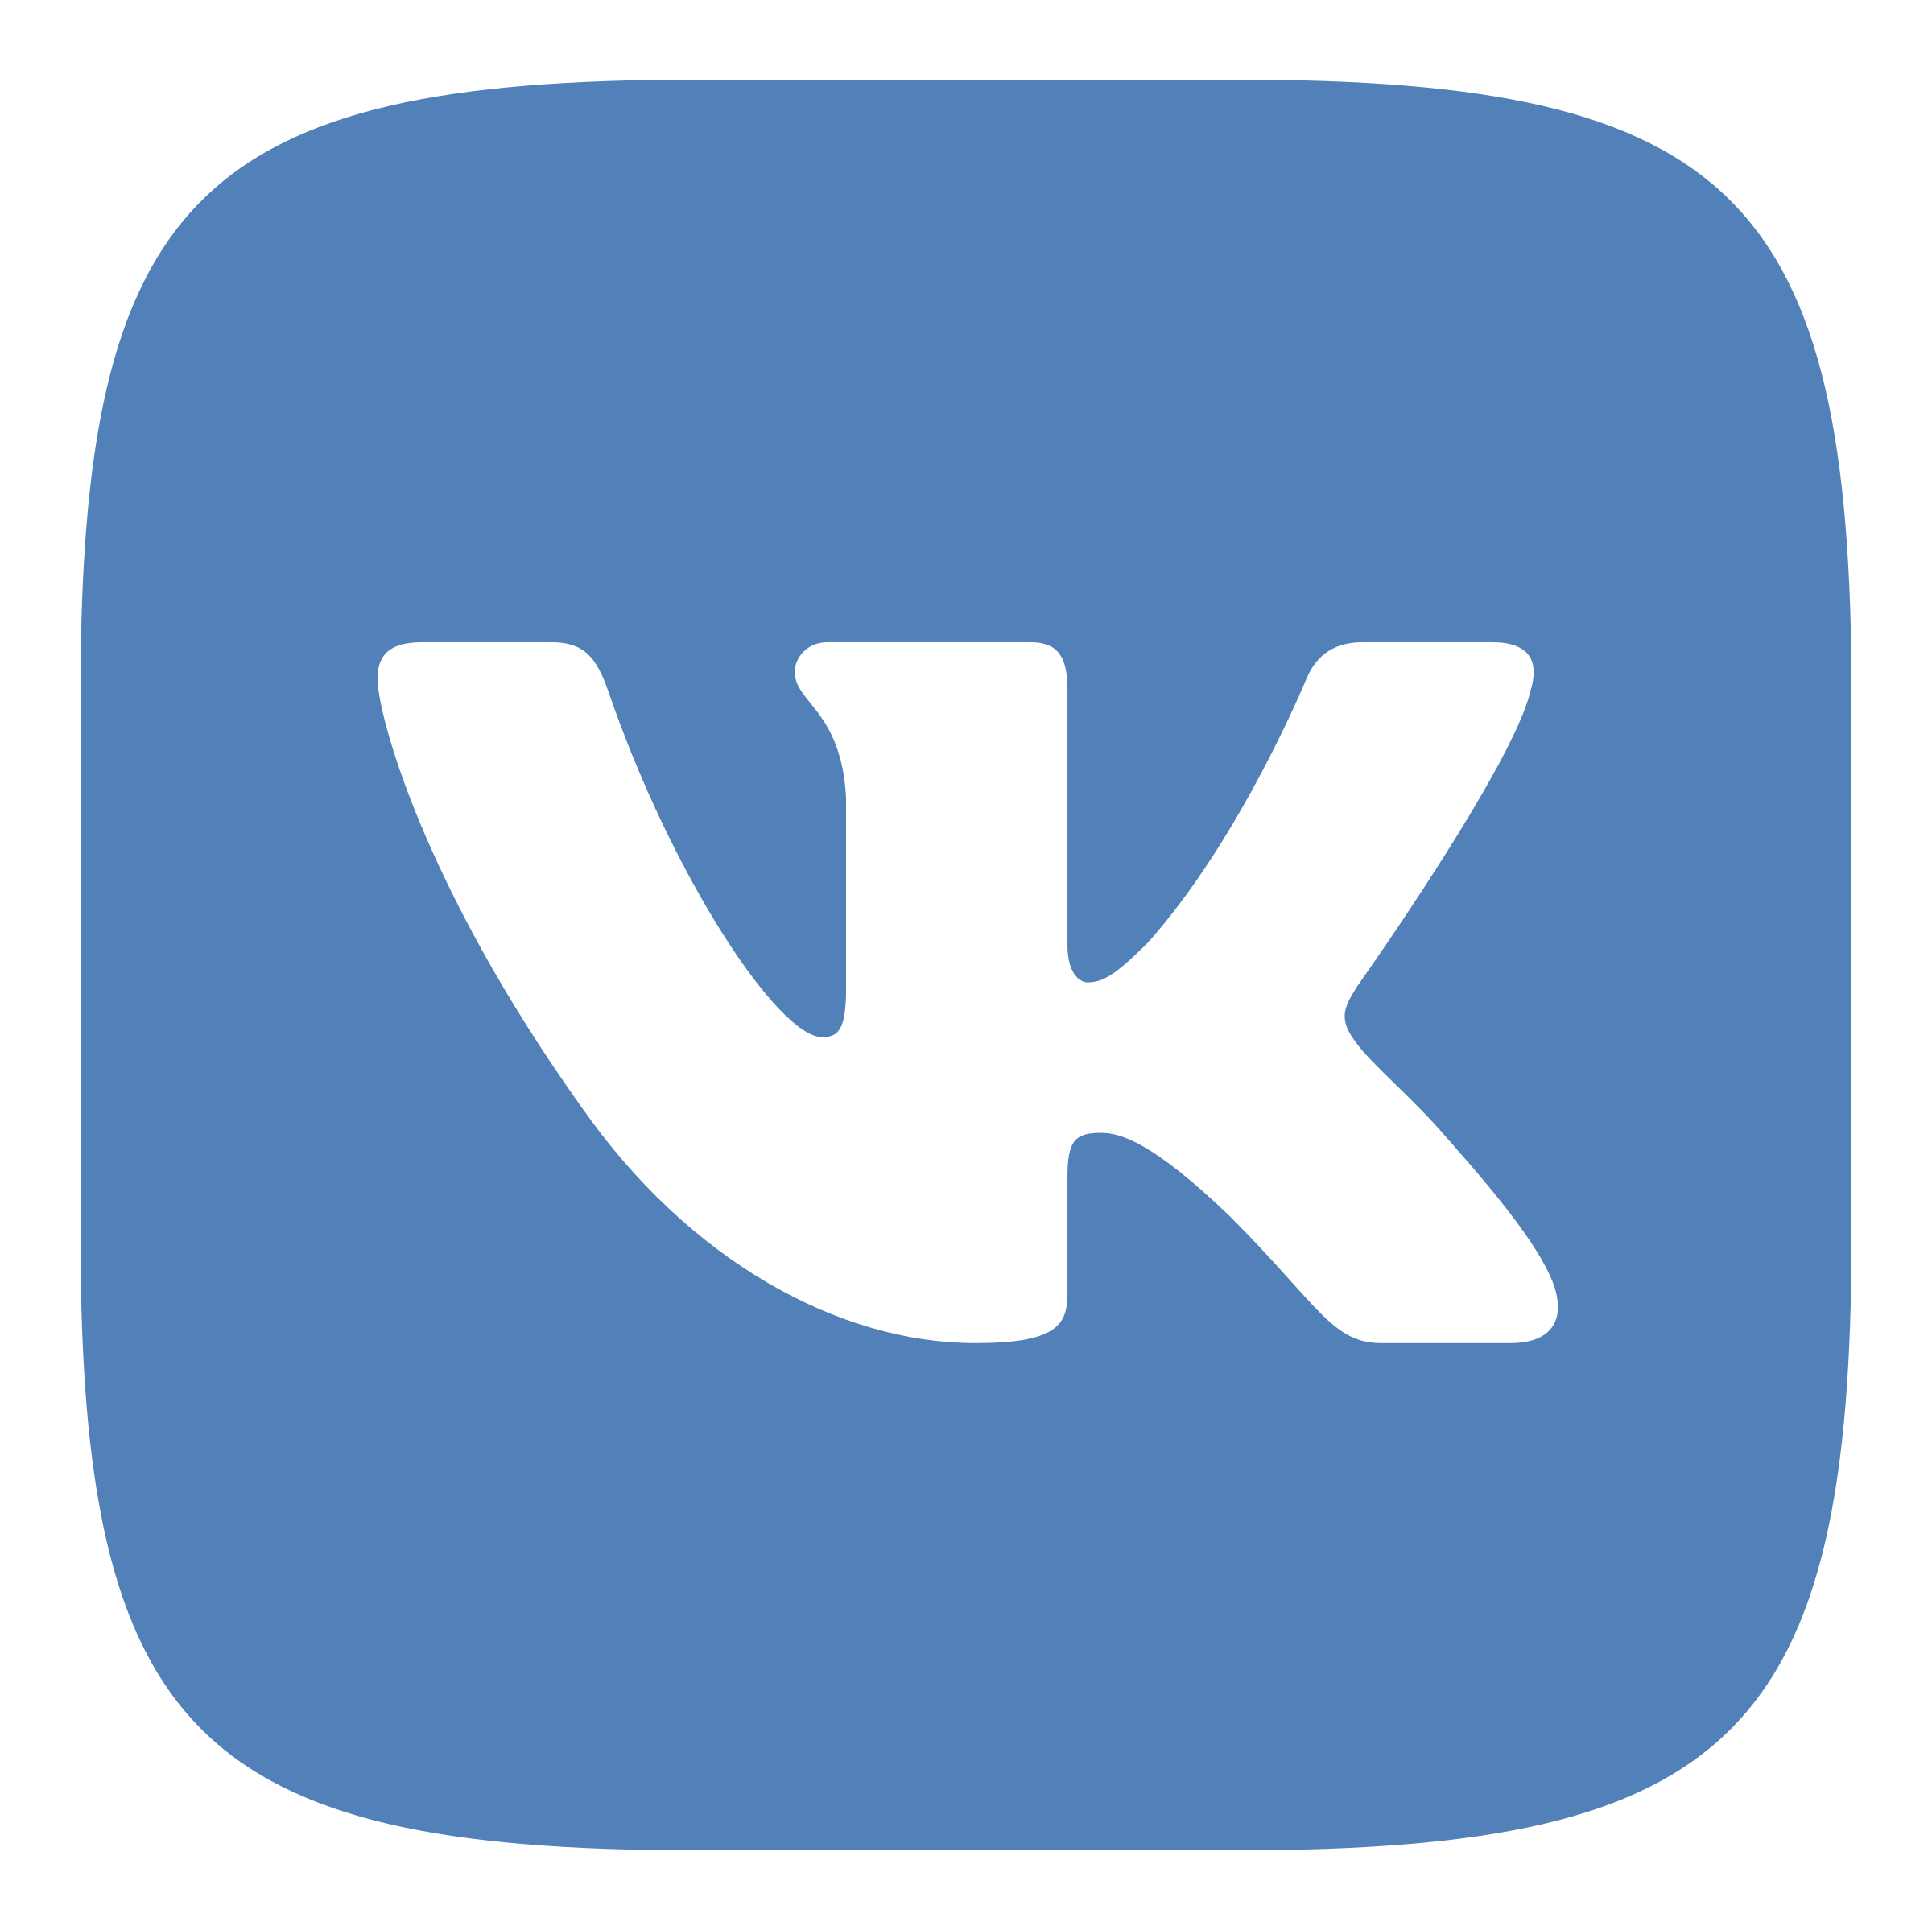 Vkontakte Logo PNG Transparent Picture